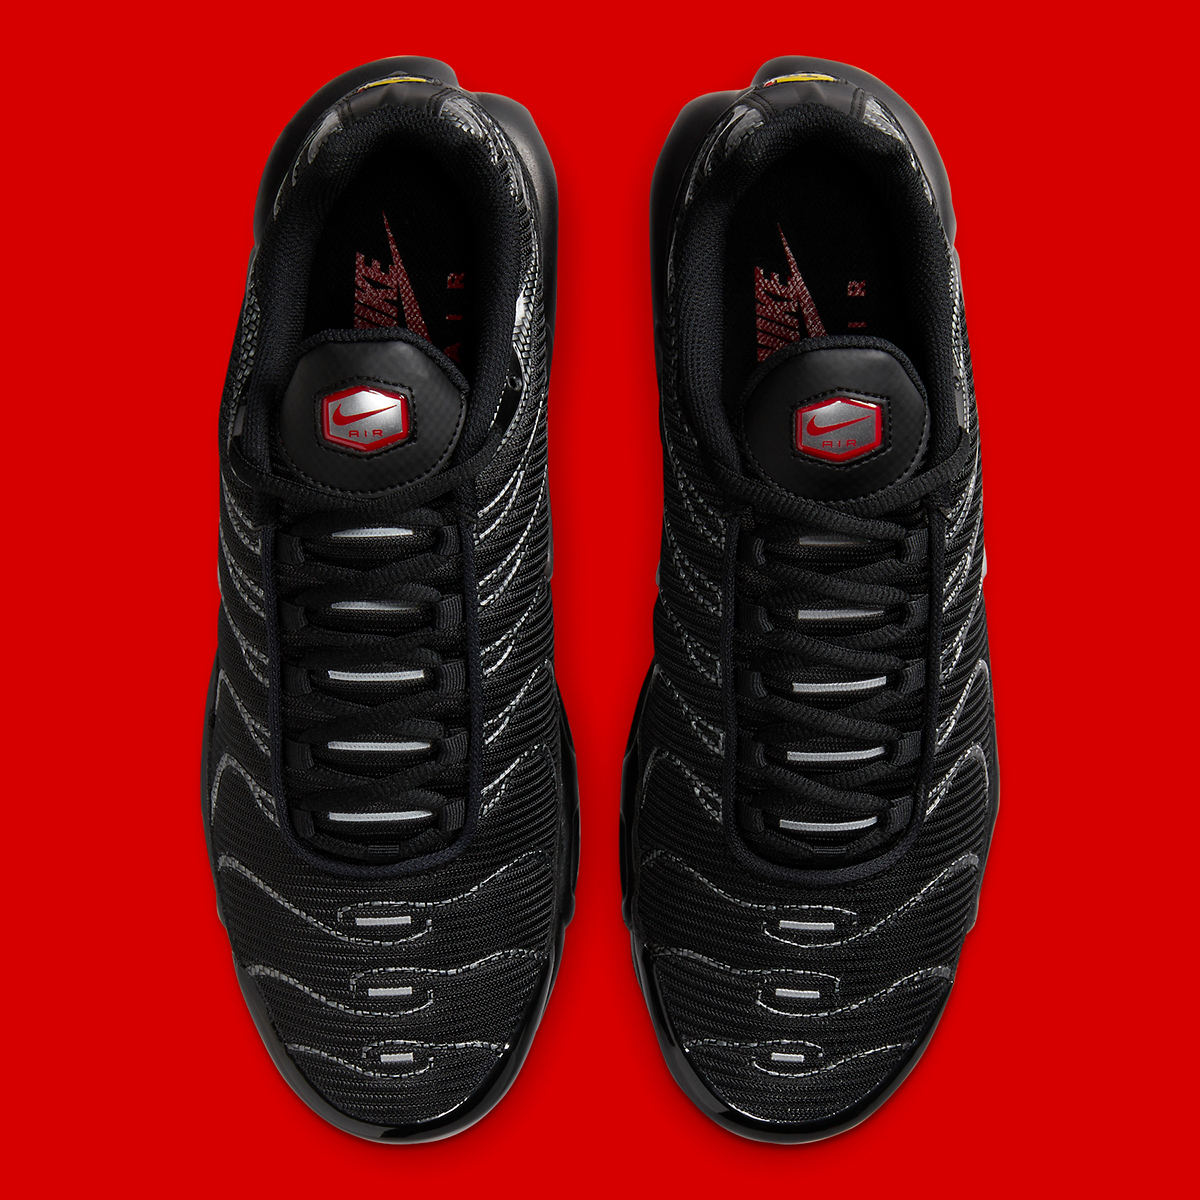 Nike nike air max 270 sko til store barn white Black Red Carbon Fiber Hf4293 001 4